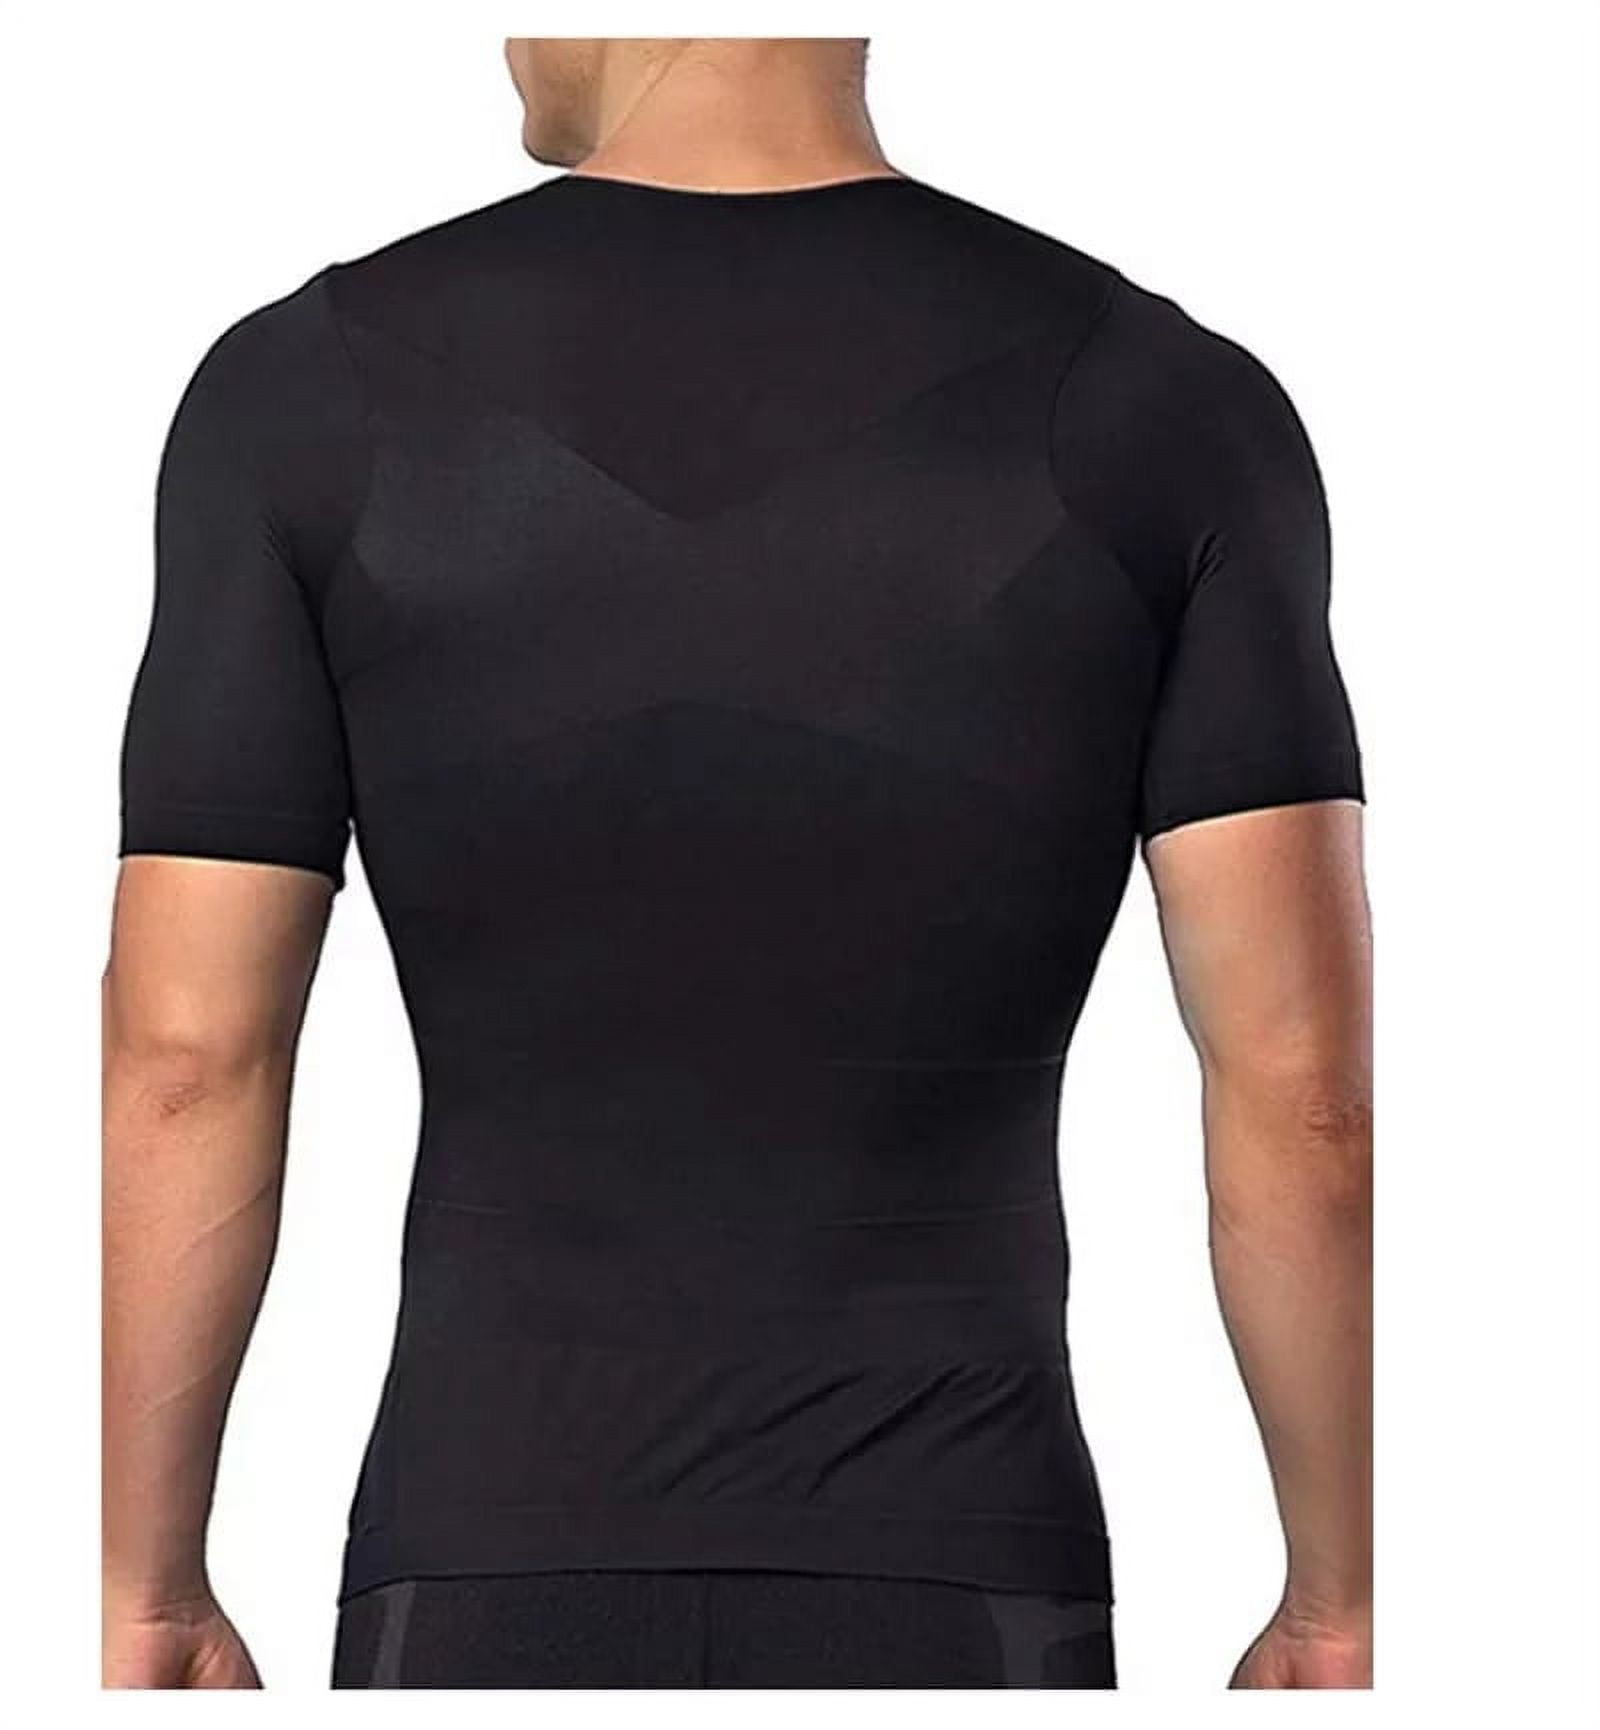  Sculpt Core – Men's Body Shaper, Men's Shaping Tummy Shirt,  Compression Ion Shaping Shirt, Compression Base Men's (Color : Black, Size  : Large) : Clothing, Shoes & Jewelry